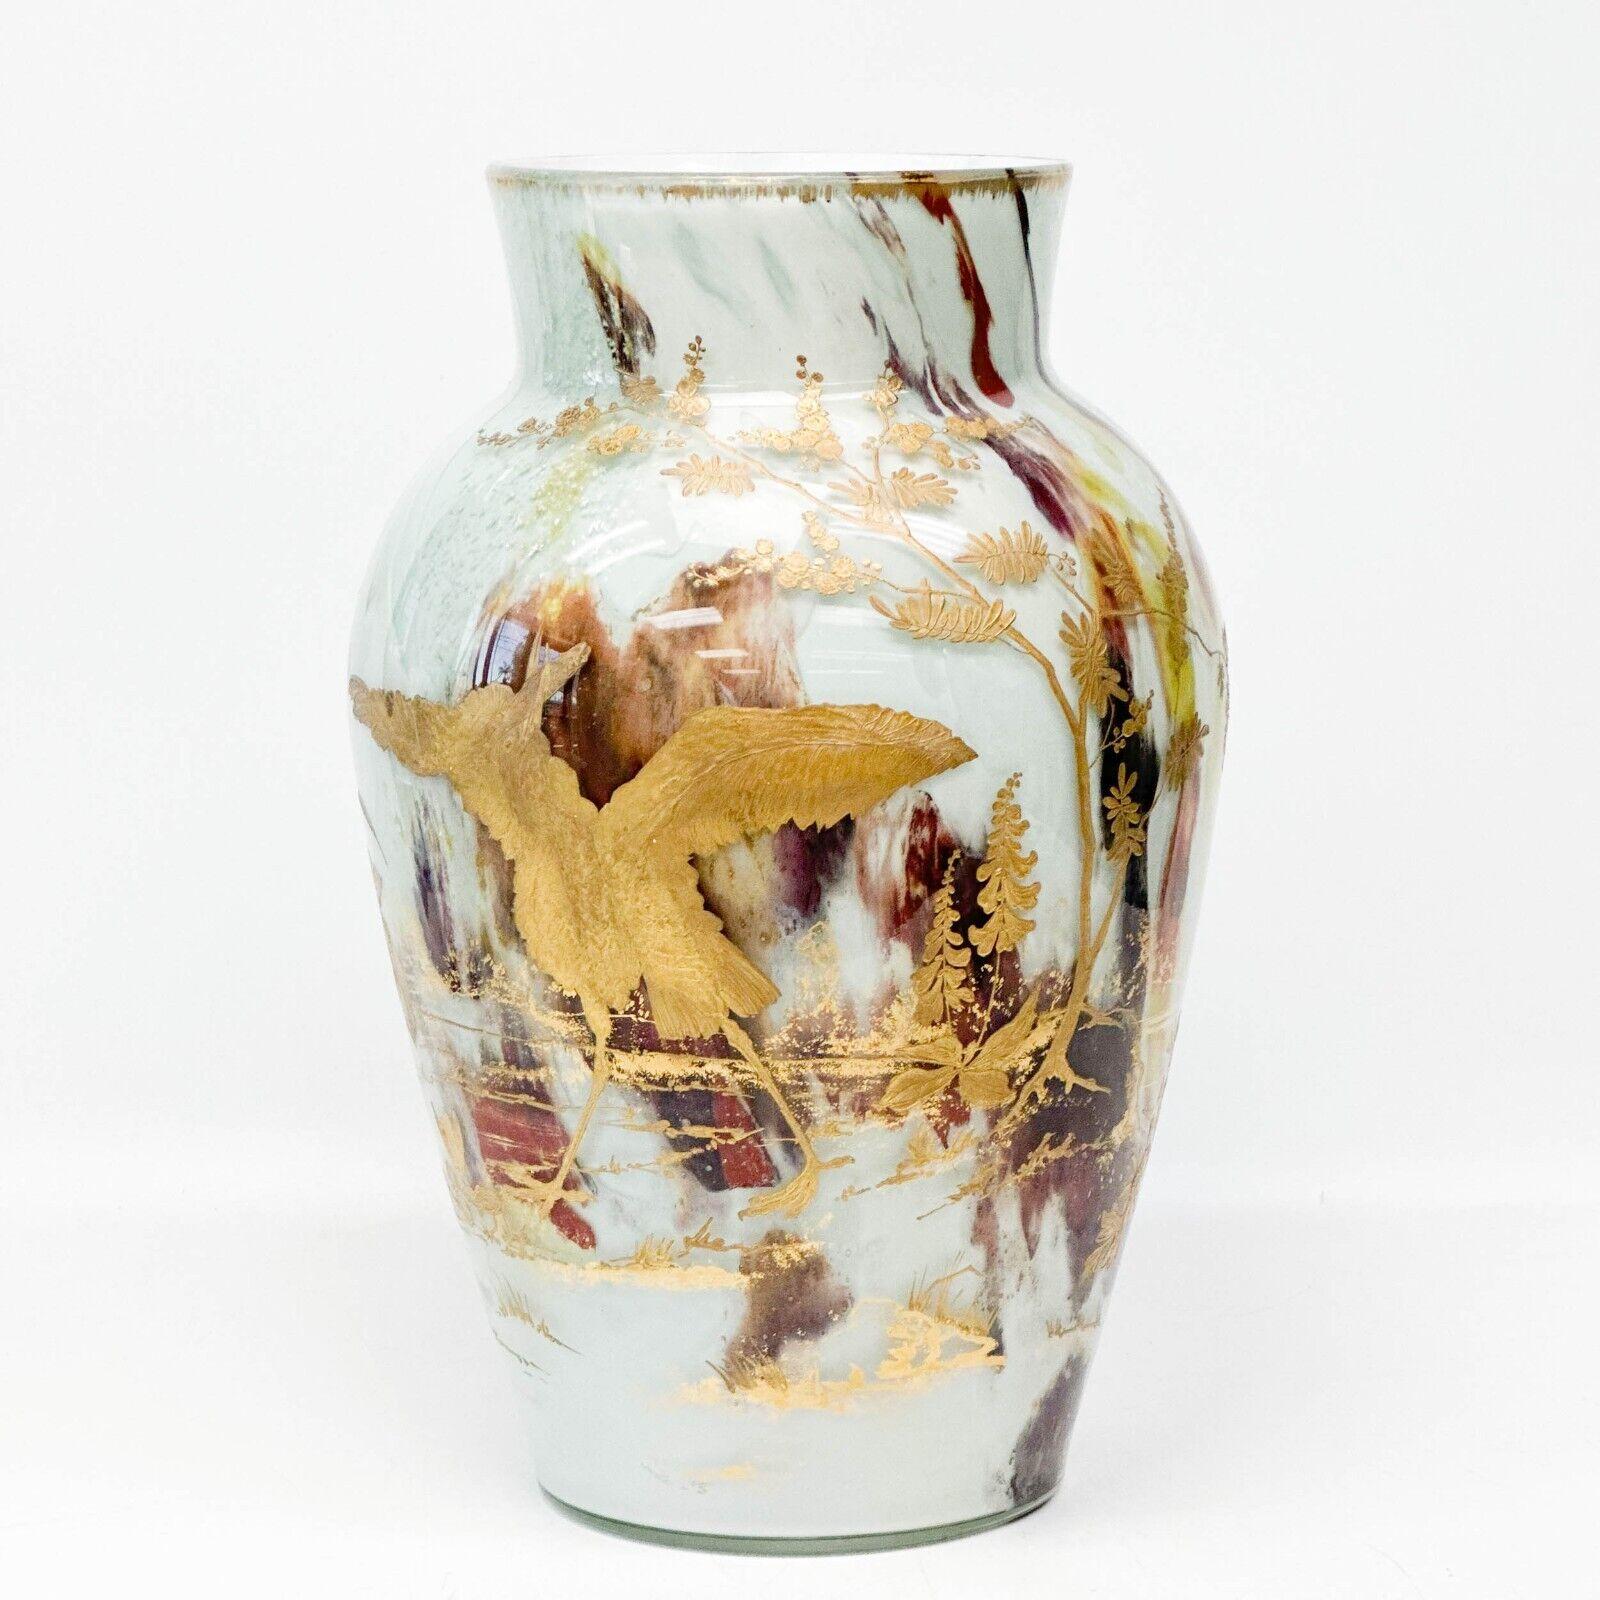  Vase aus undurchsichtigem Kunstglas von Ernest Baptiste Leveille, um 1900, vergoldete Blumen

Opakes Glas, innen mit gelben, roten und blauen, silbernen Metallplättchen verziert. Erhöhte vergoldete florale Dekoration auf der Außenseite des 